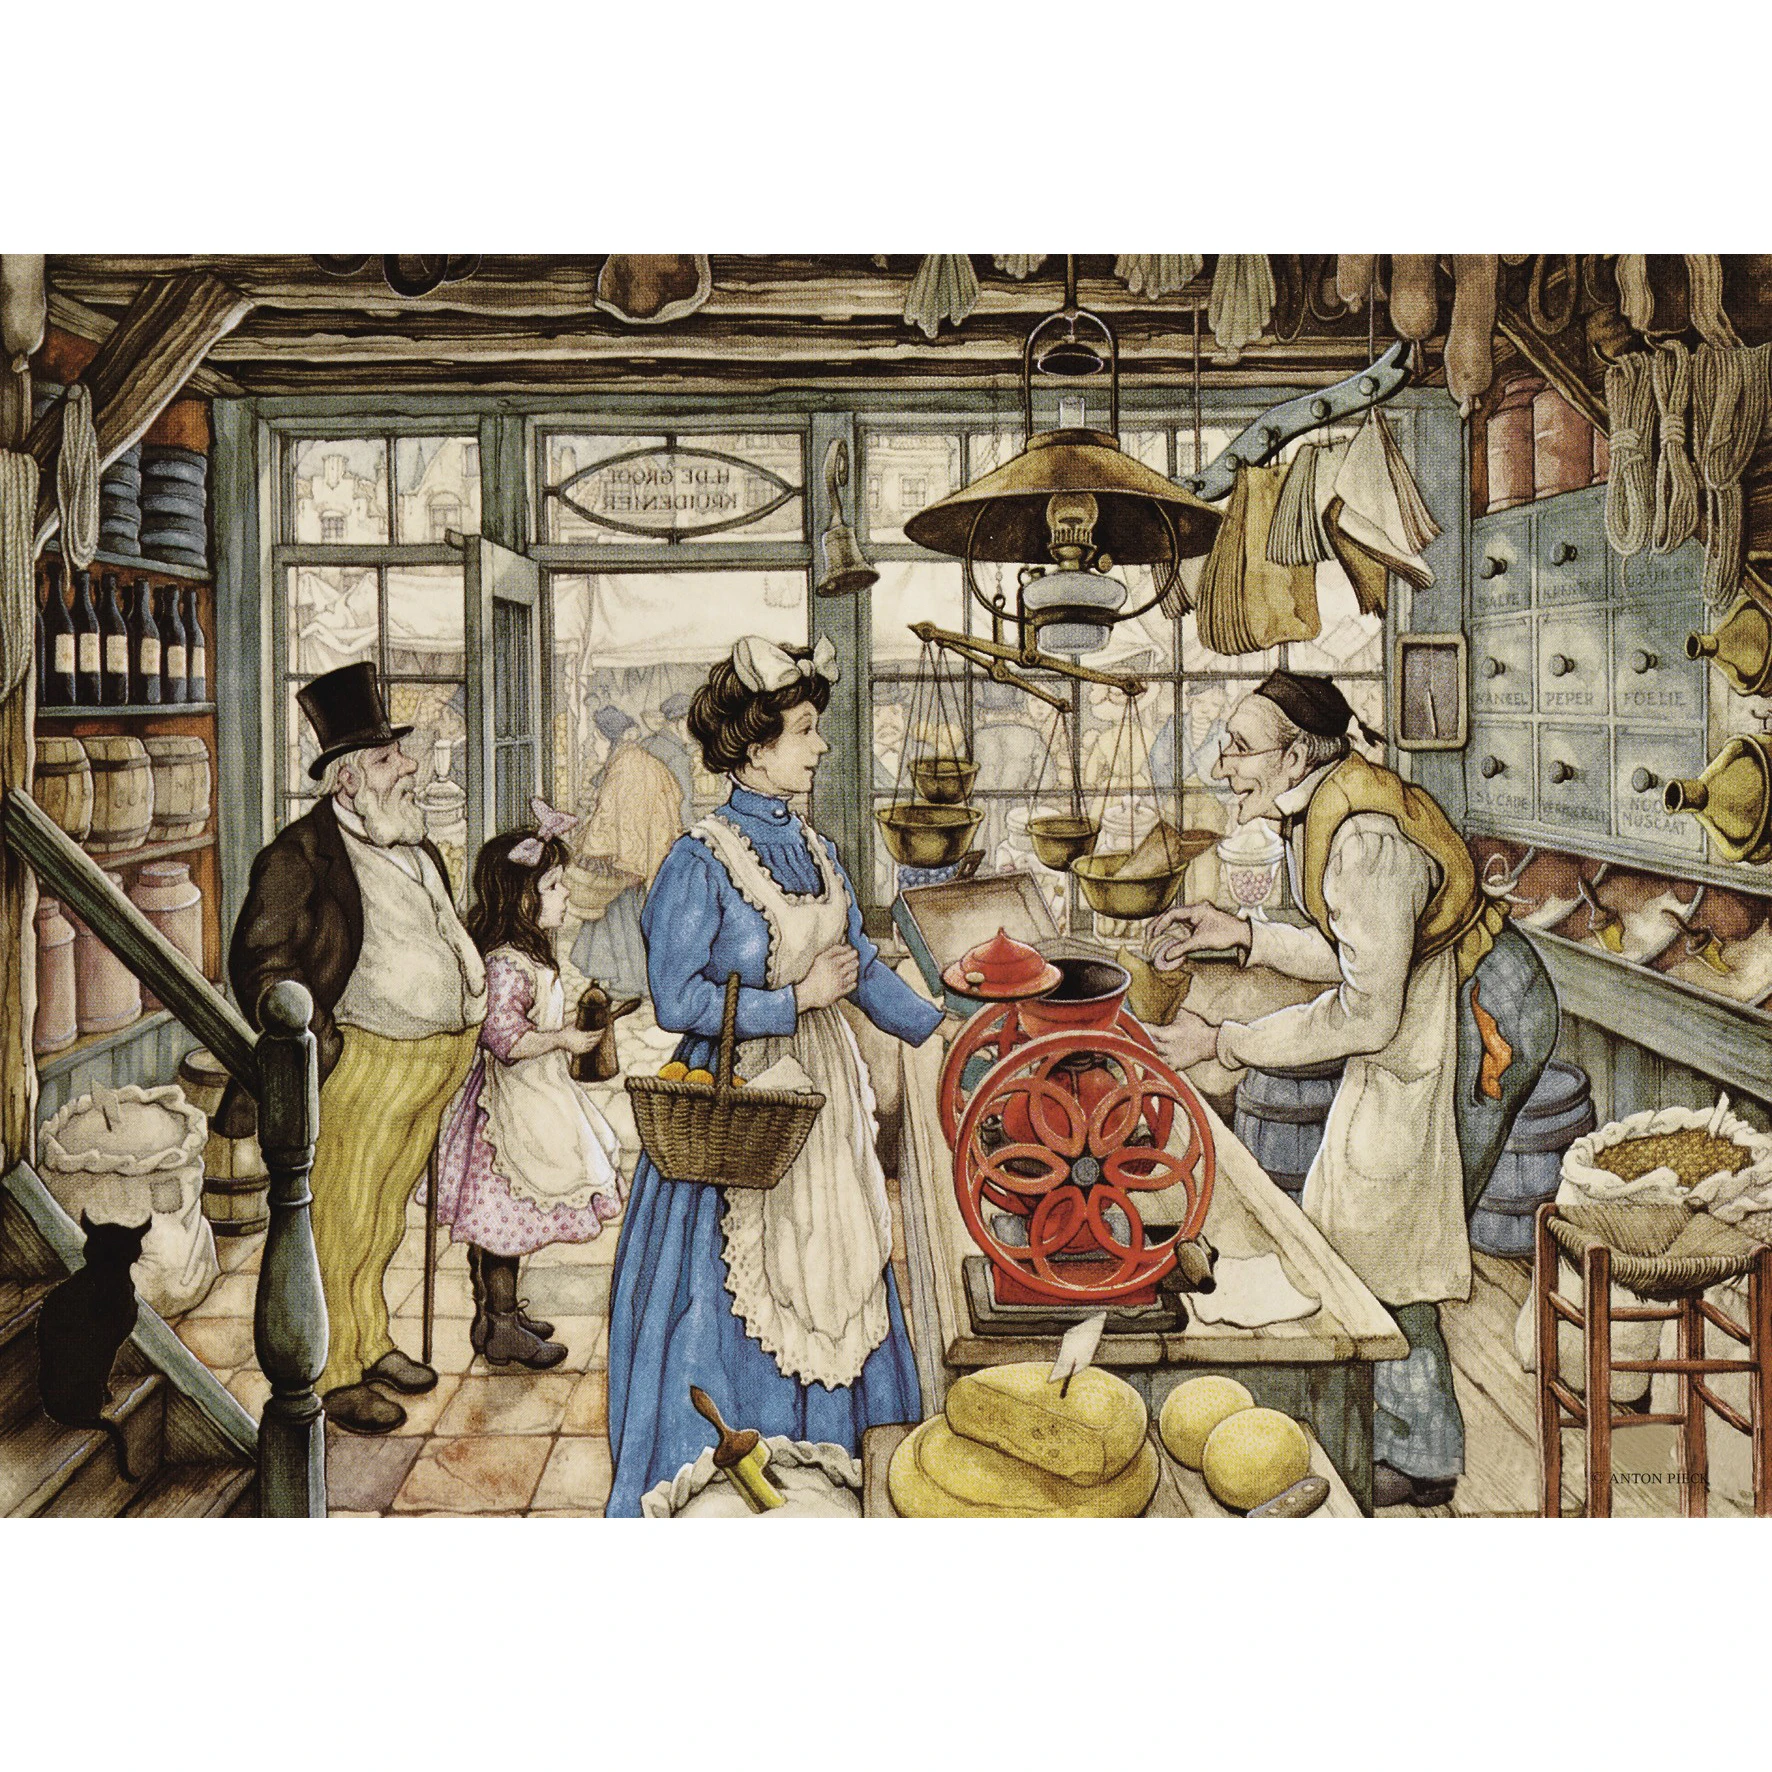 Продукты 18 века. Торговые лавки 19 века в Англии картины.